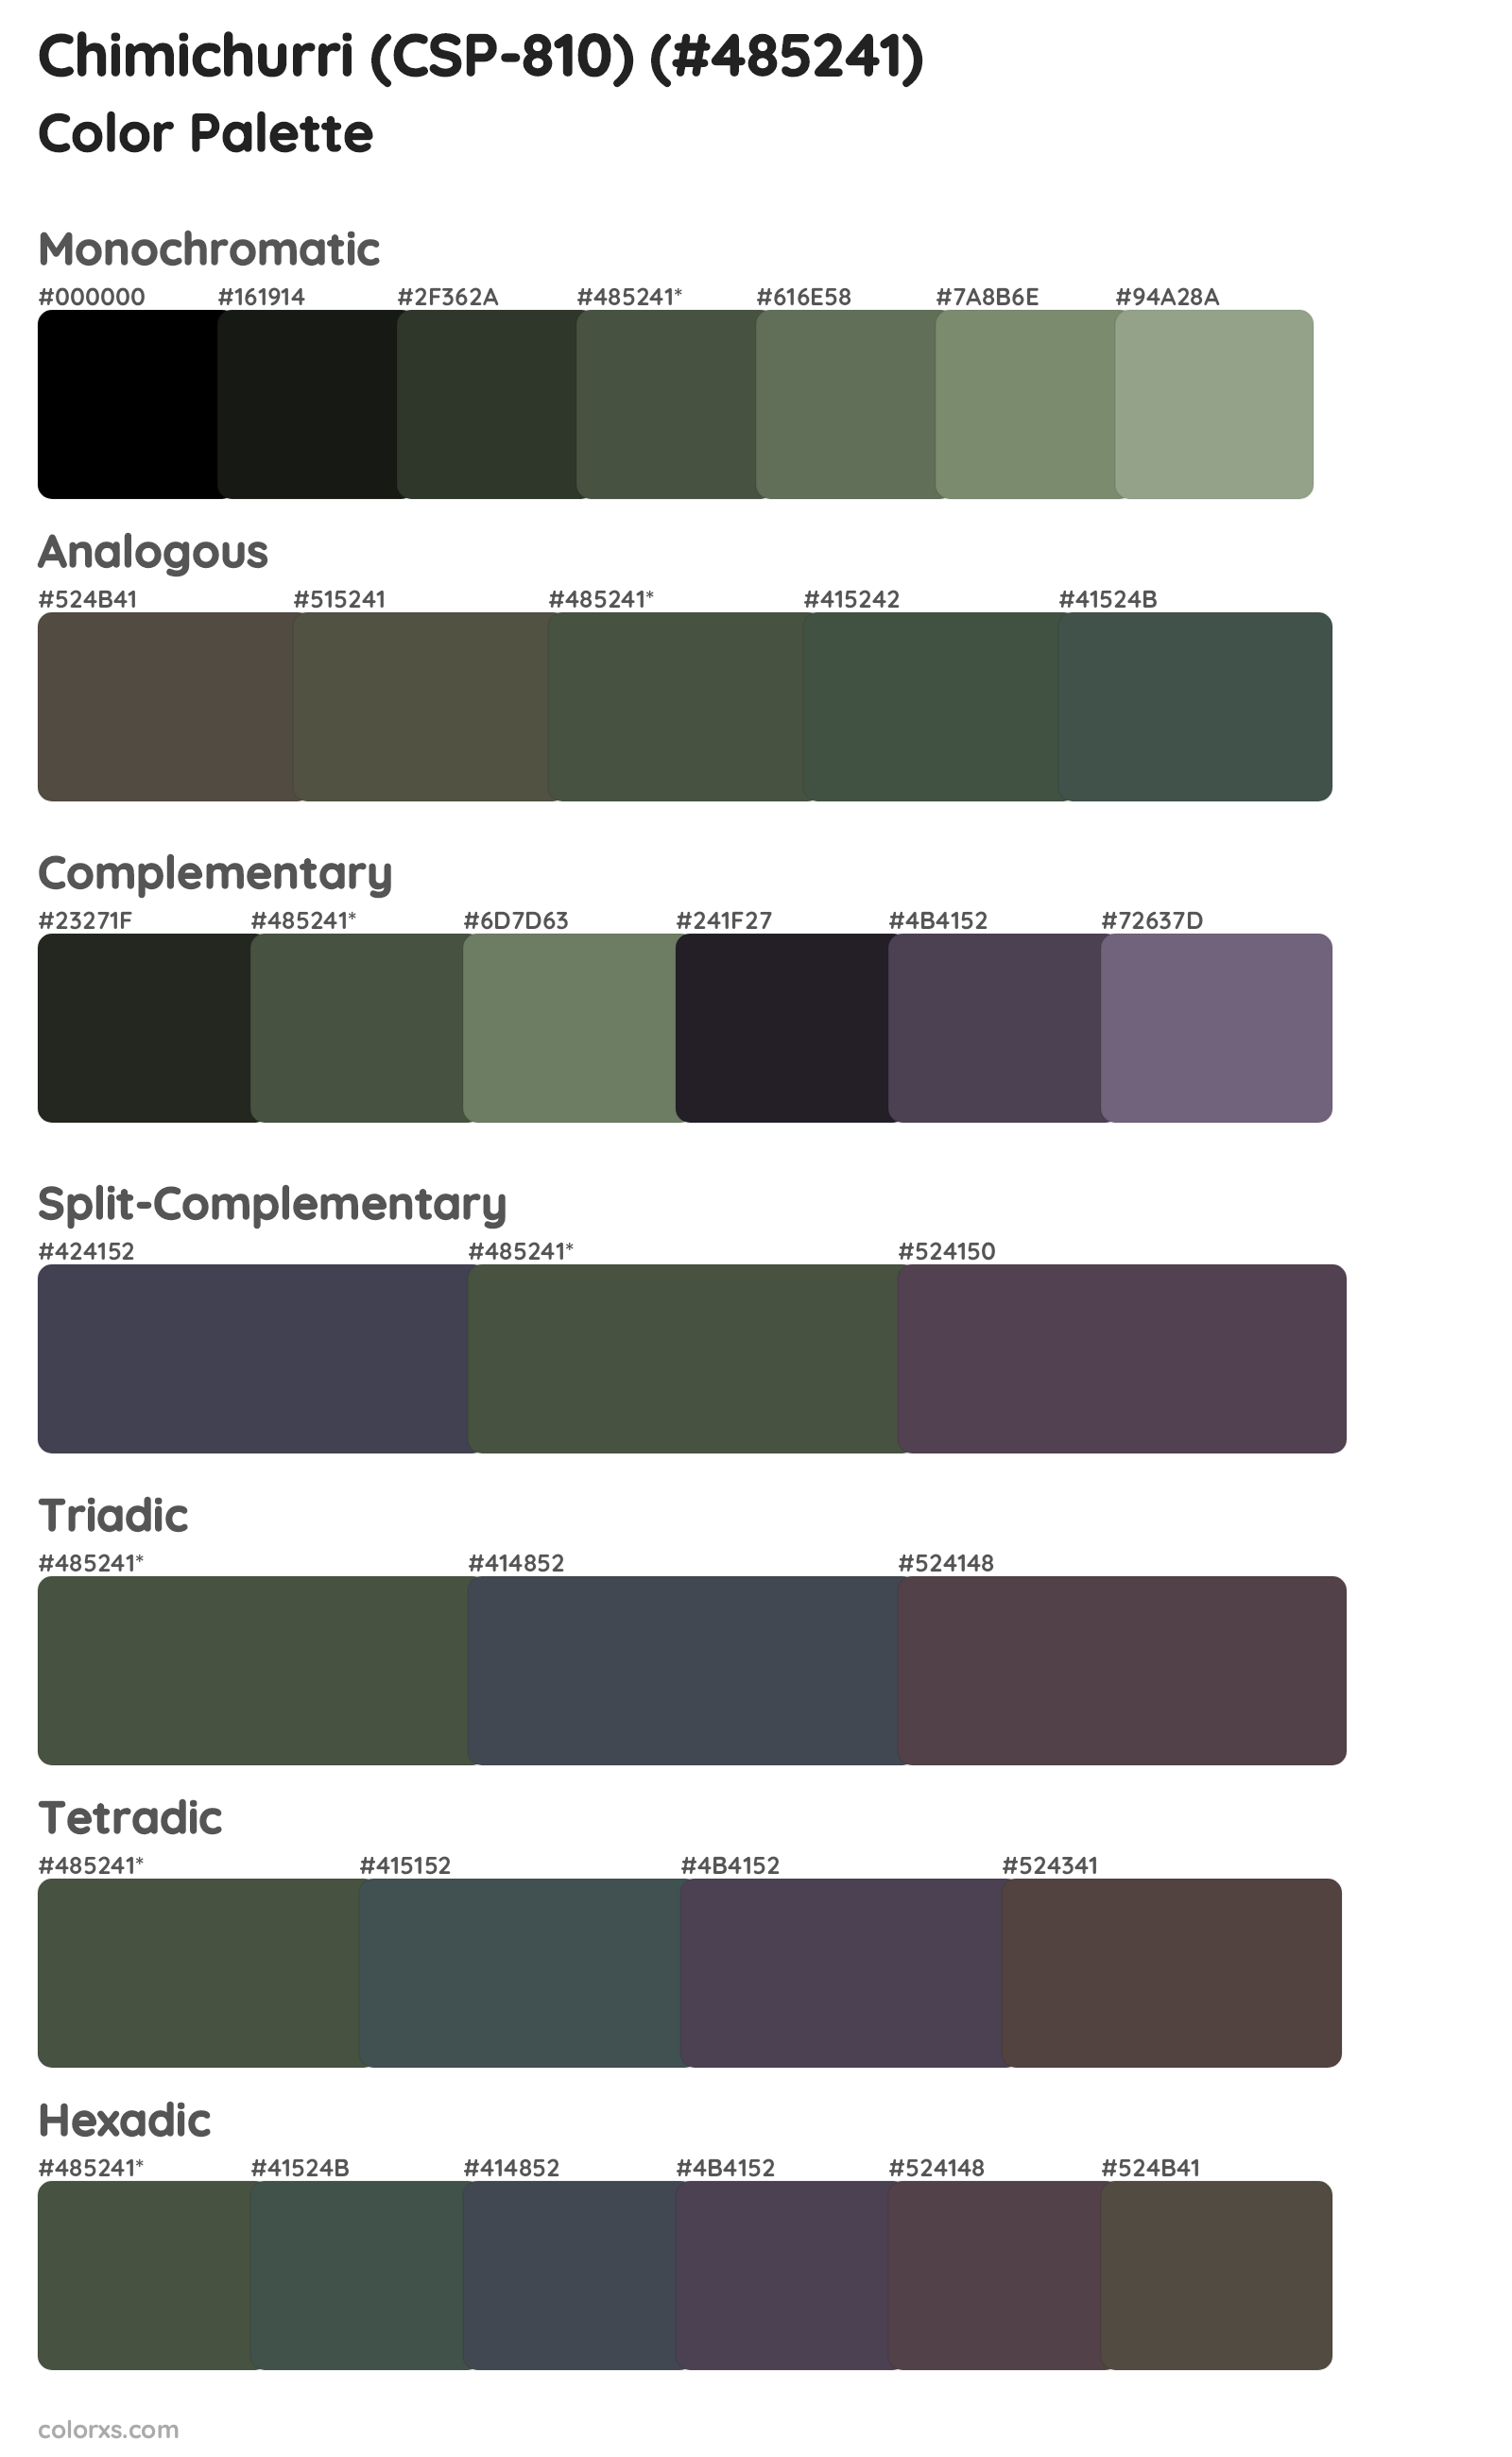 Chimichurri (CSP-810) Color Scheme Palettes